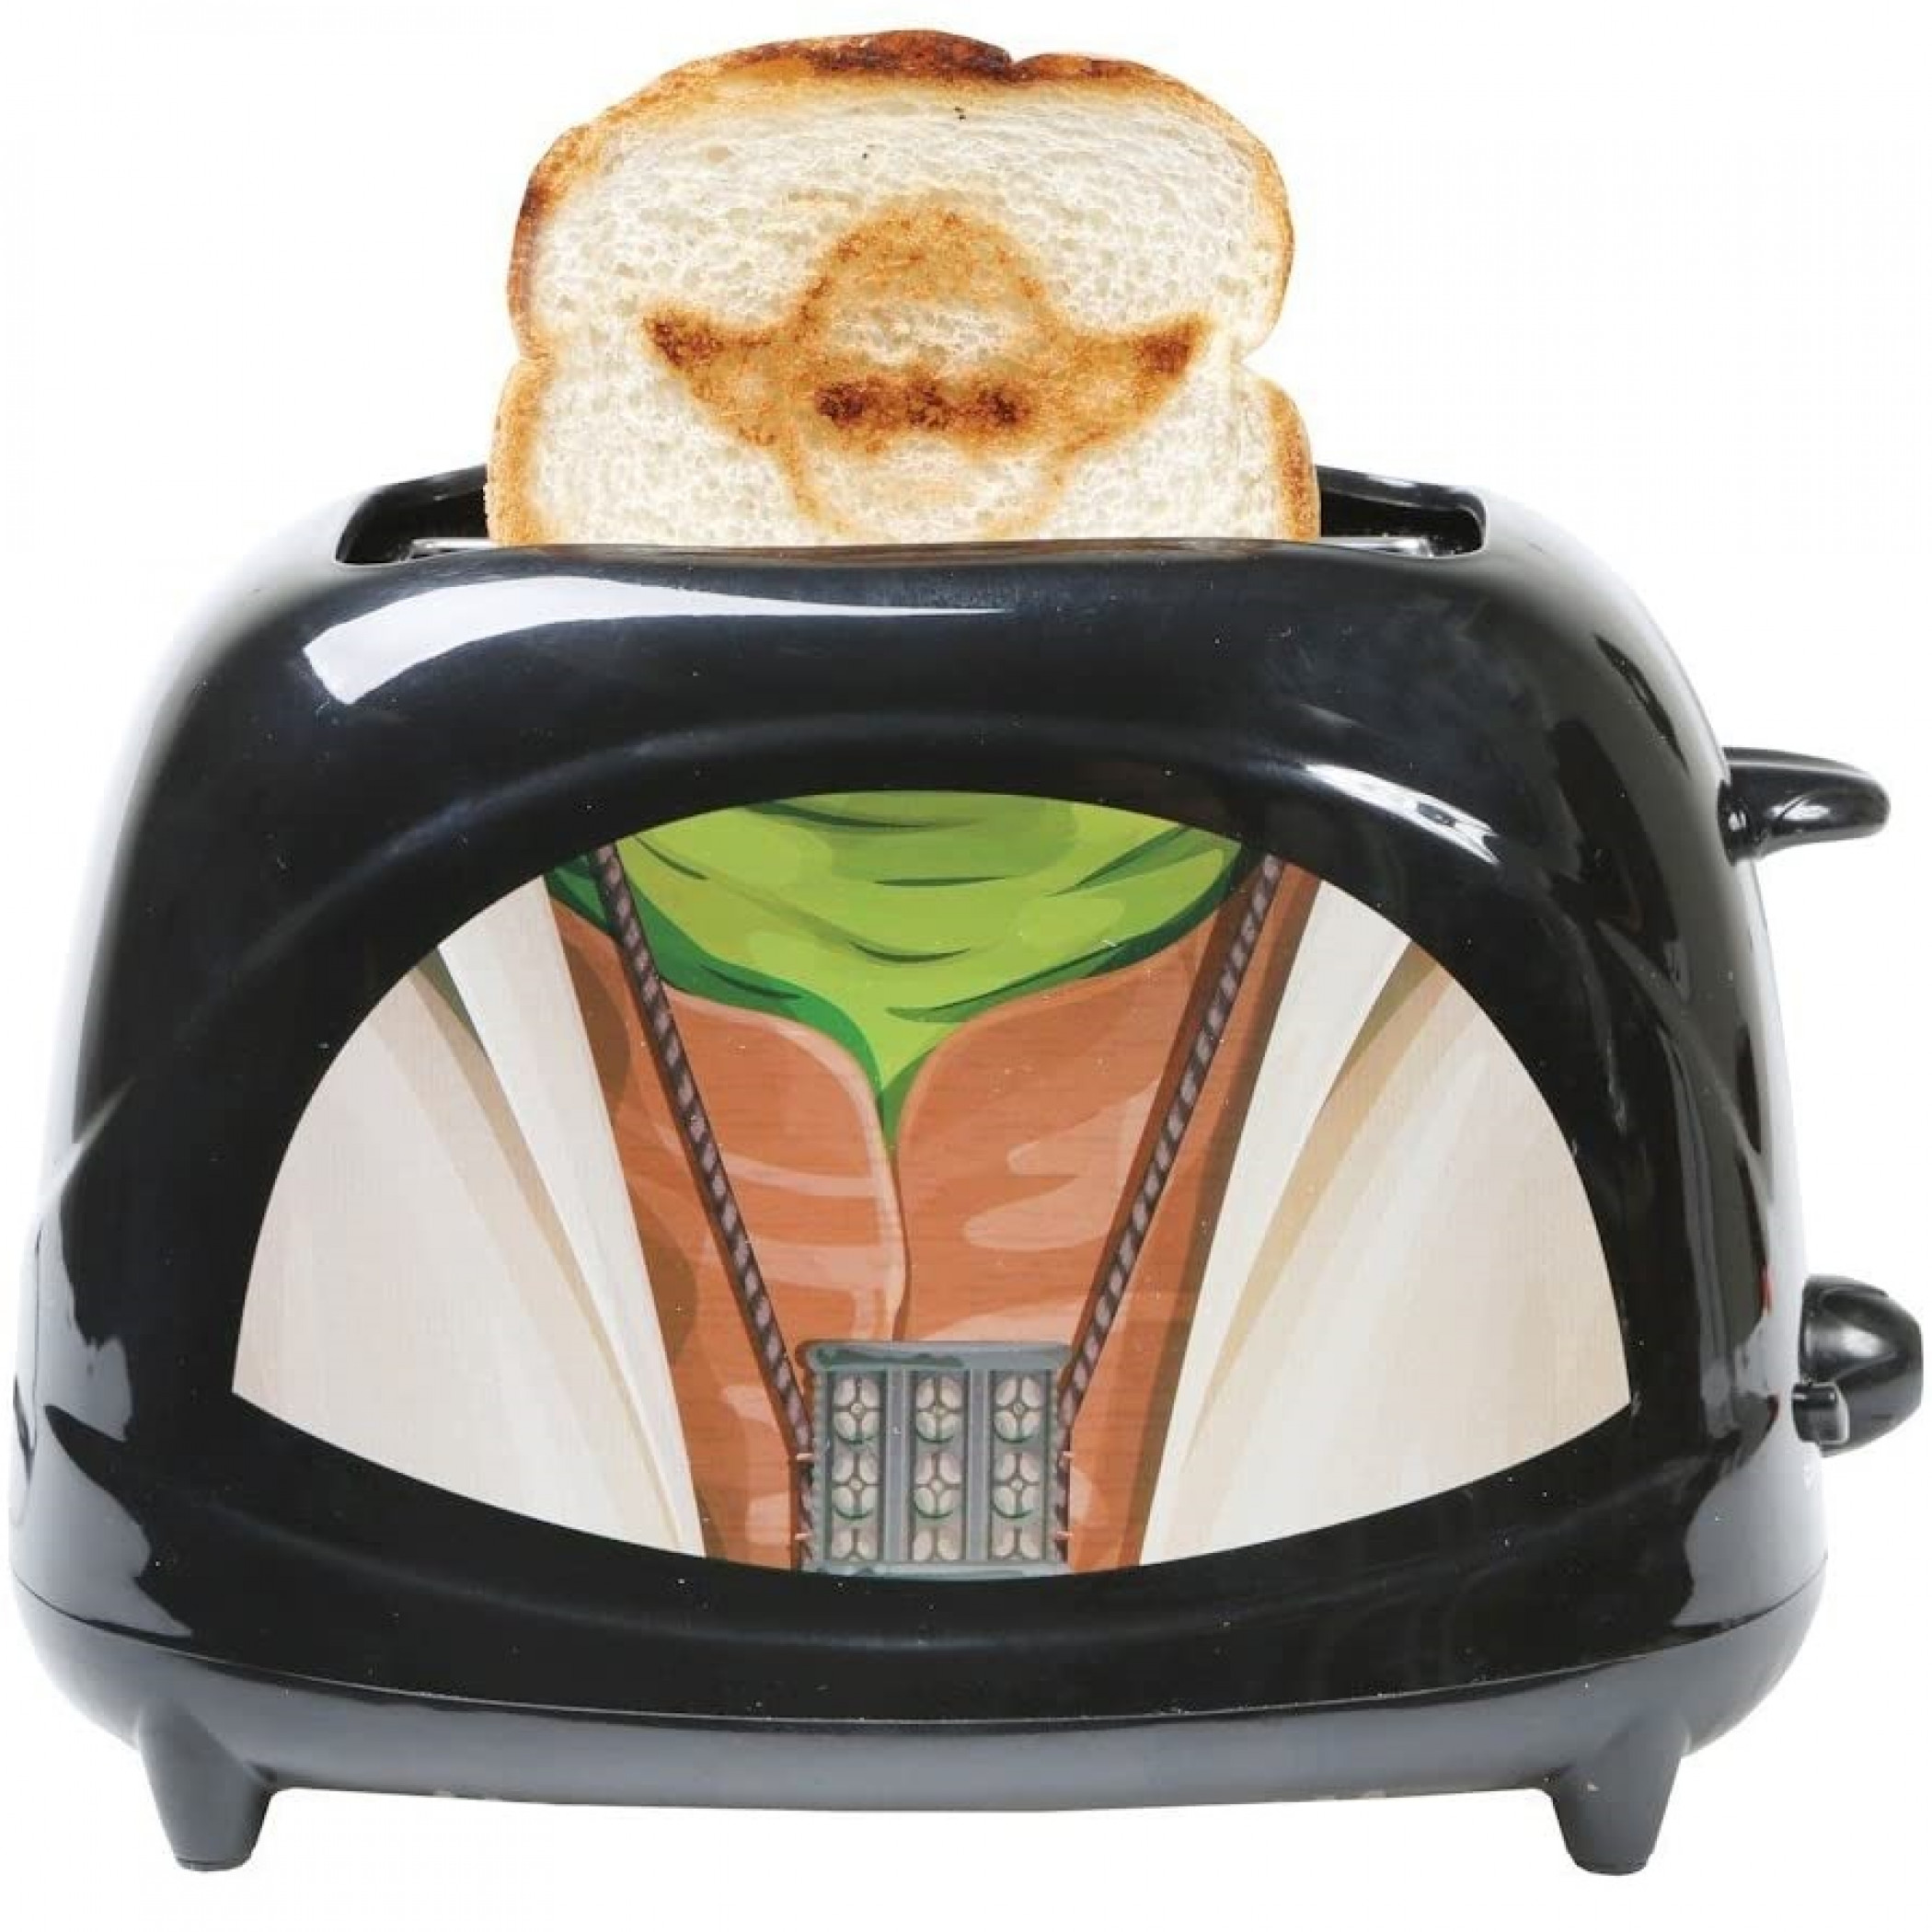 Star Wars Yoda Robe Toaster